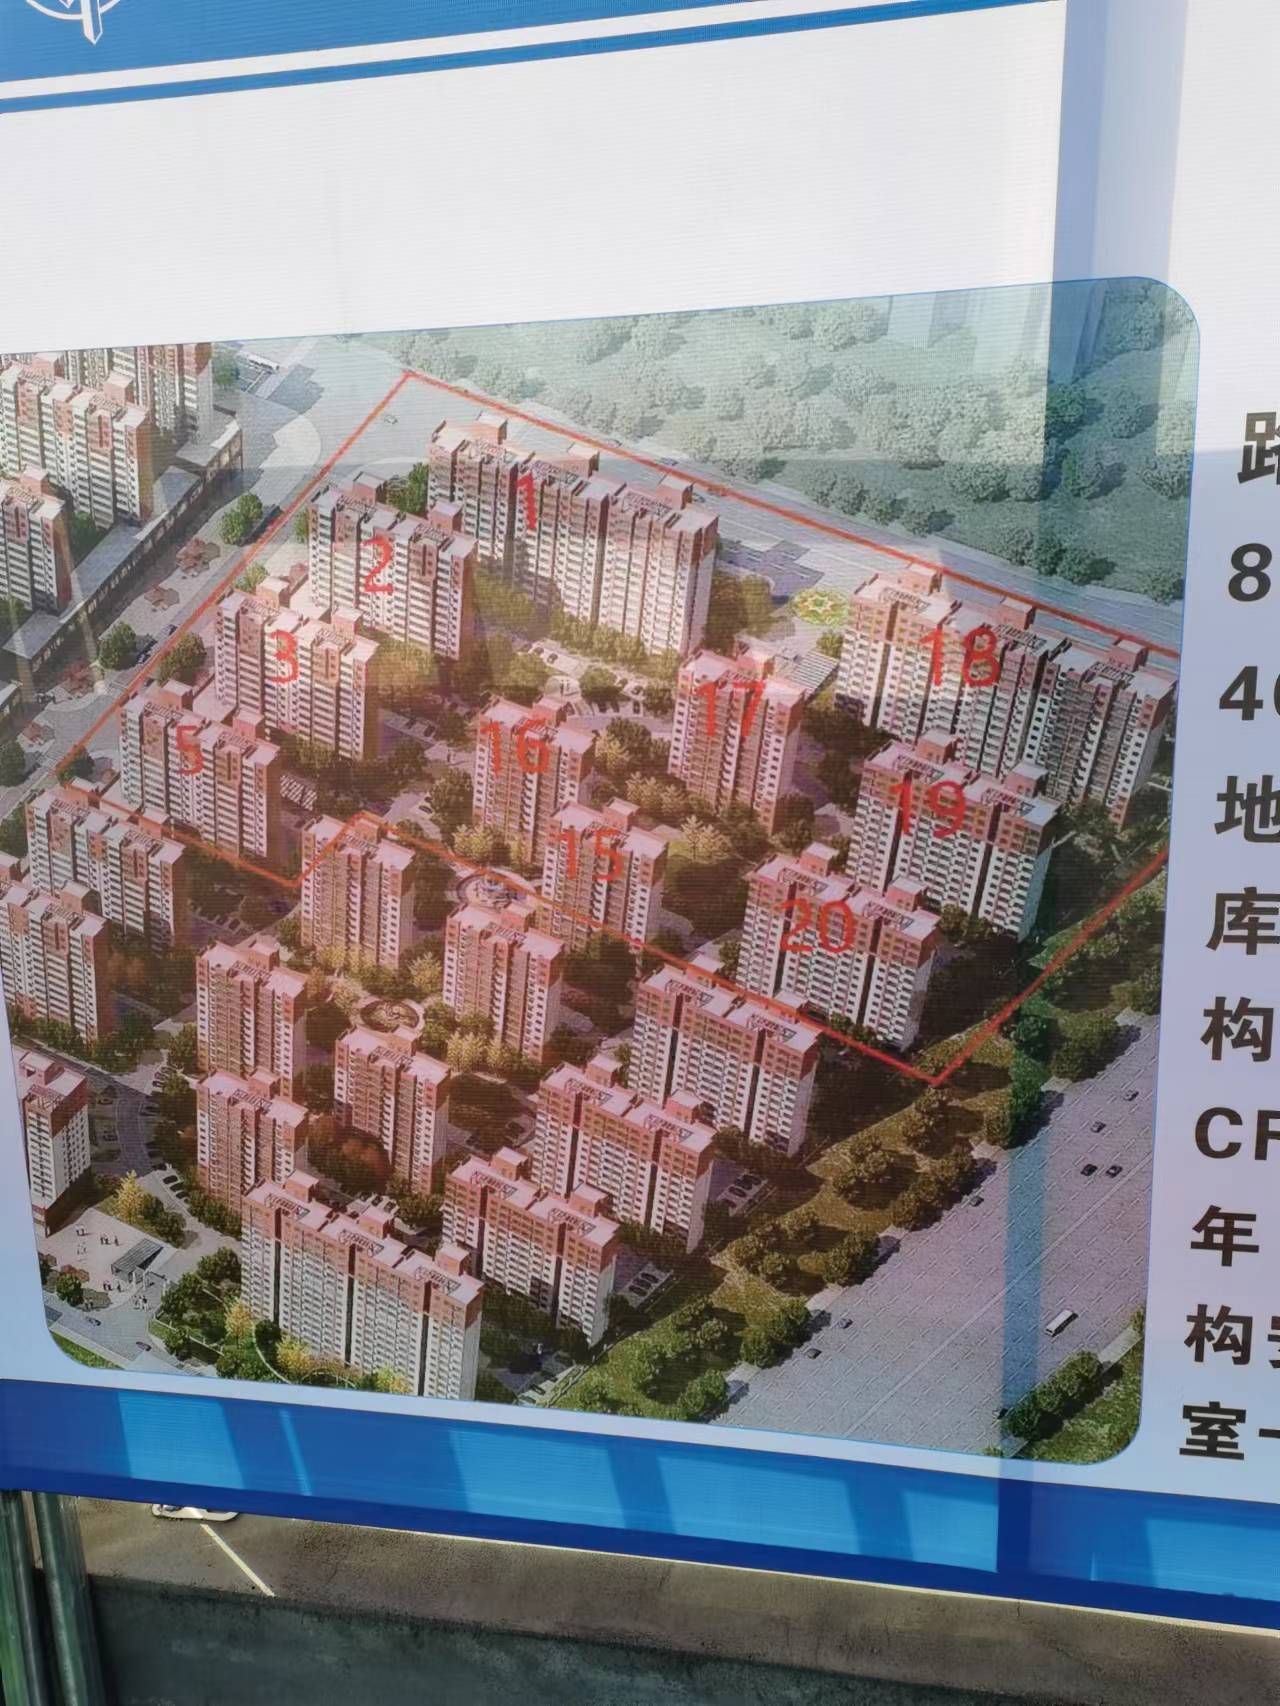 【在建项目信息】南阳高新技术产业集聚区2#号安置小区B区二期工程最新进展